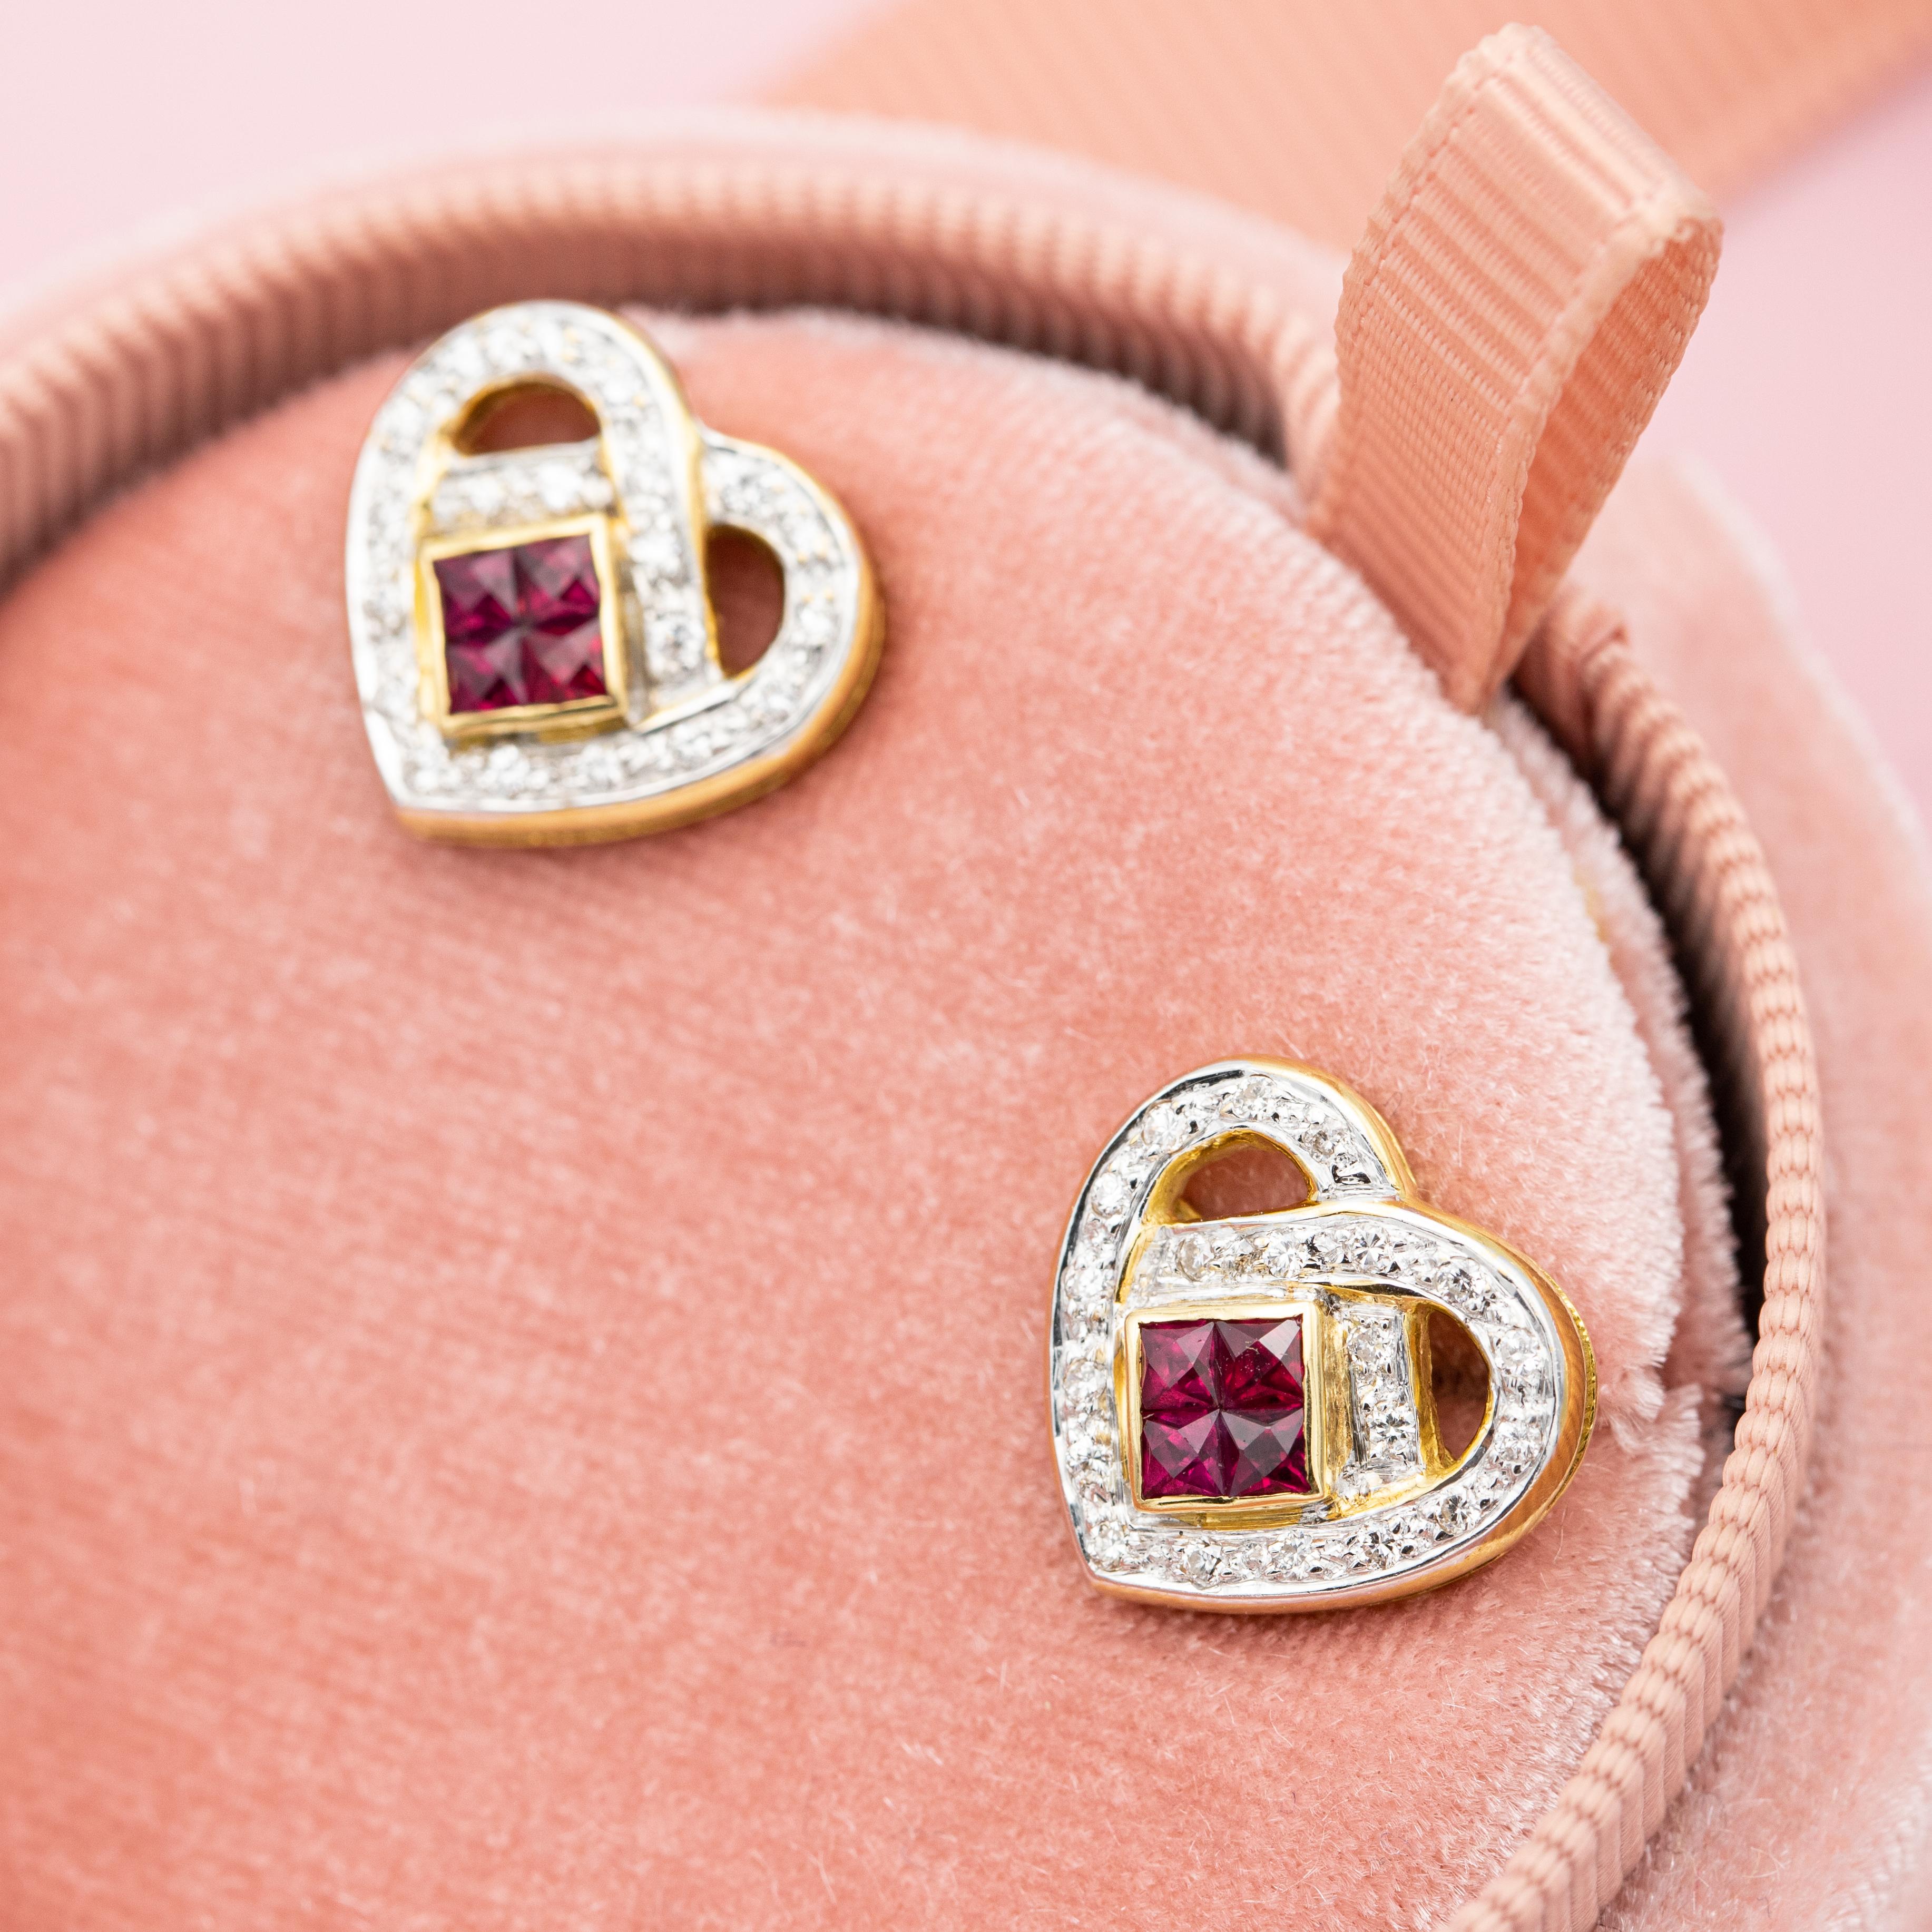 Zum Verkauf steht dieses Paar Herz-Ohrringe aus 18 K Gelbgold. Dieses wunderschöne Paar ist mit kleinen Diamanten im Brillantschliff besetzt, die zusammen 0,2ct ergeben. Sie sind in Form von Herzen platziert, wobei ein rotes Quadrat in der Mitte